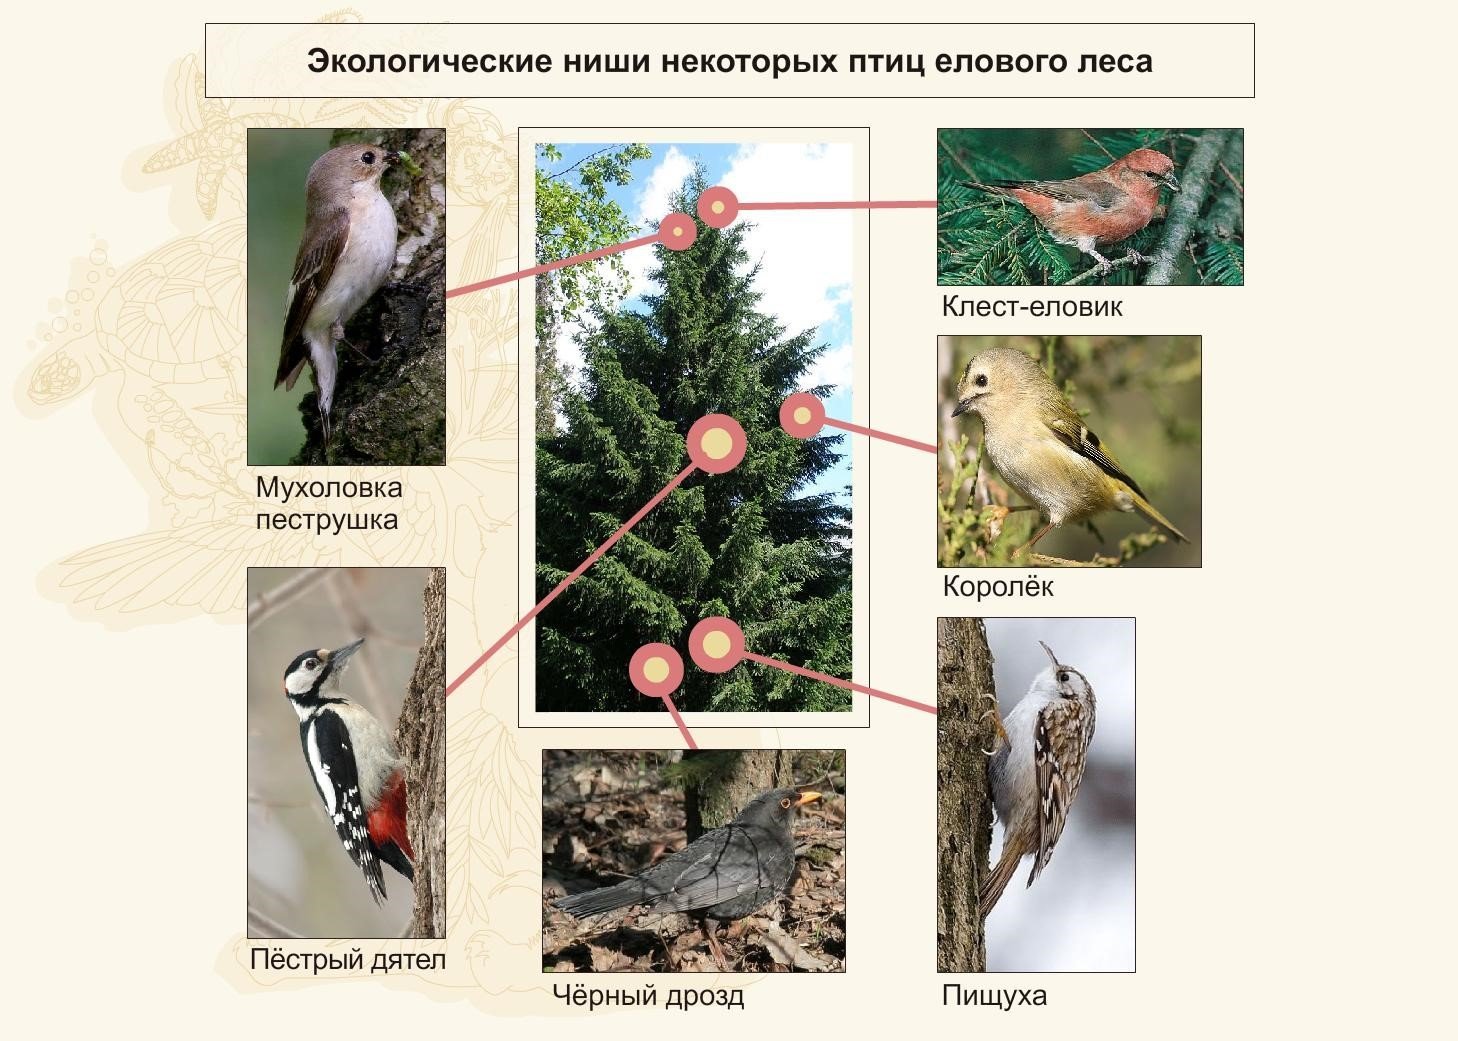 Роль растительноядных птиц в природных сообществах